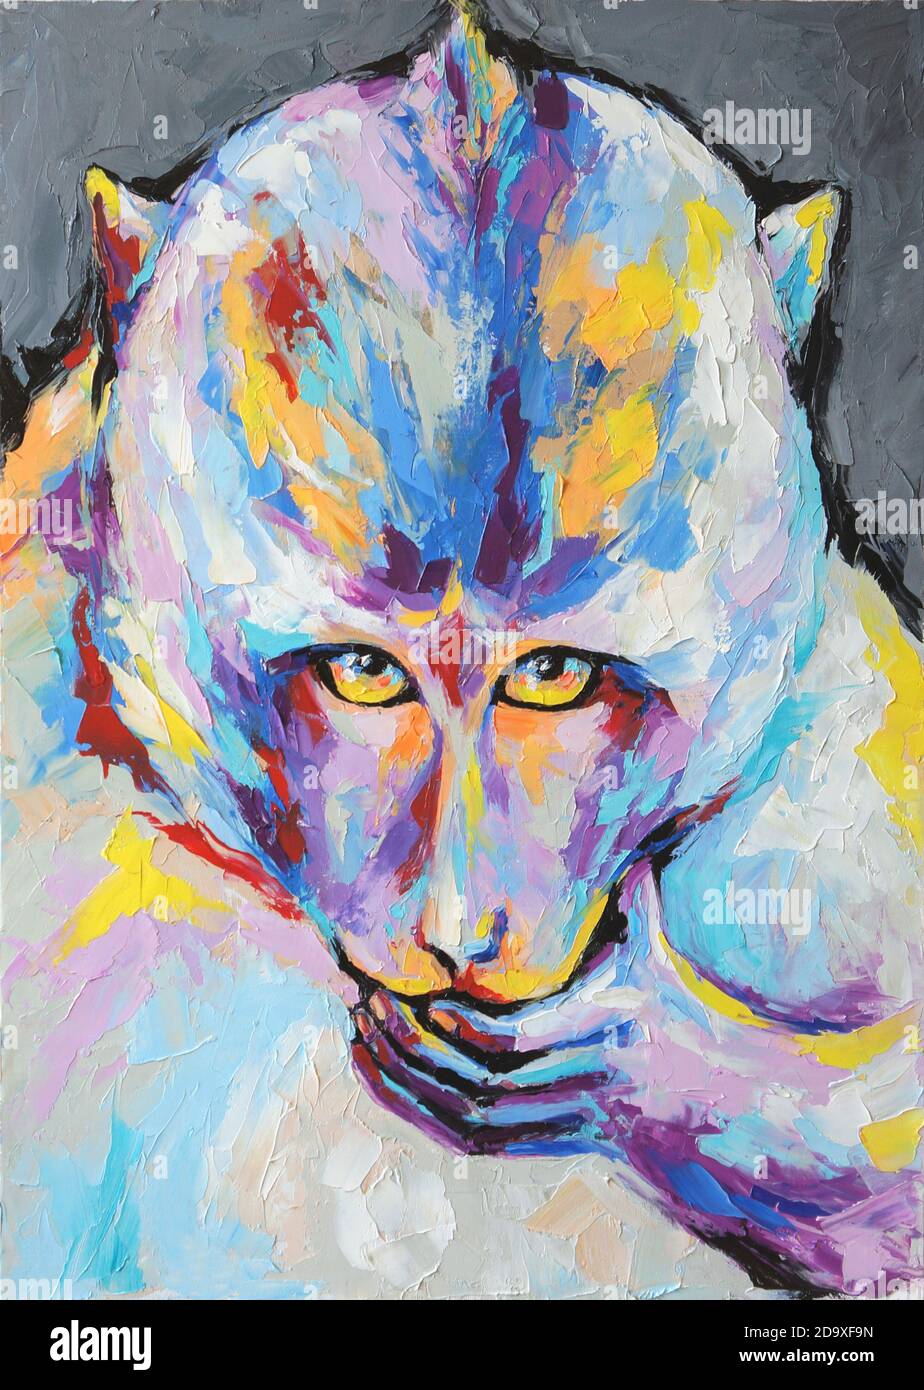 Portrait de singe de pétrole peint dans des tons multicolores. Gros plan peinture par huile et couteau à palette sur toile. Peinture abstraite conceptuelle d'un singe. Banque D'Images